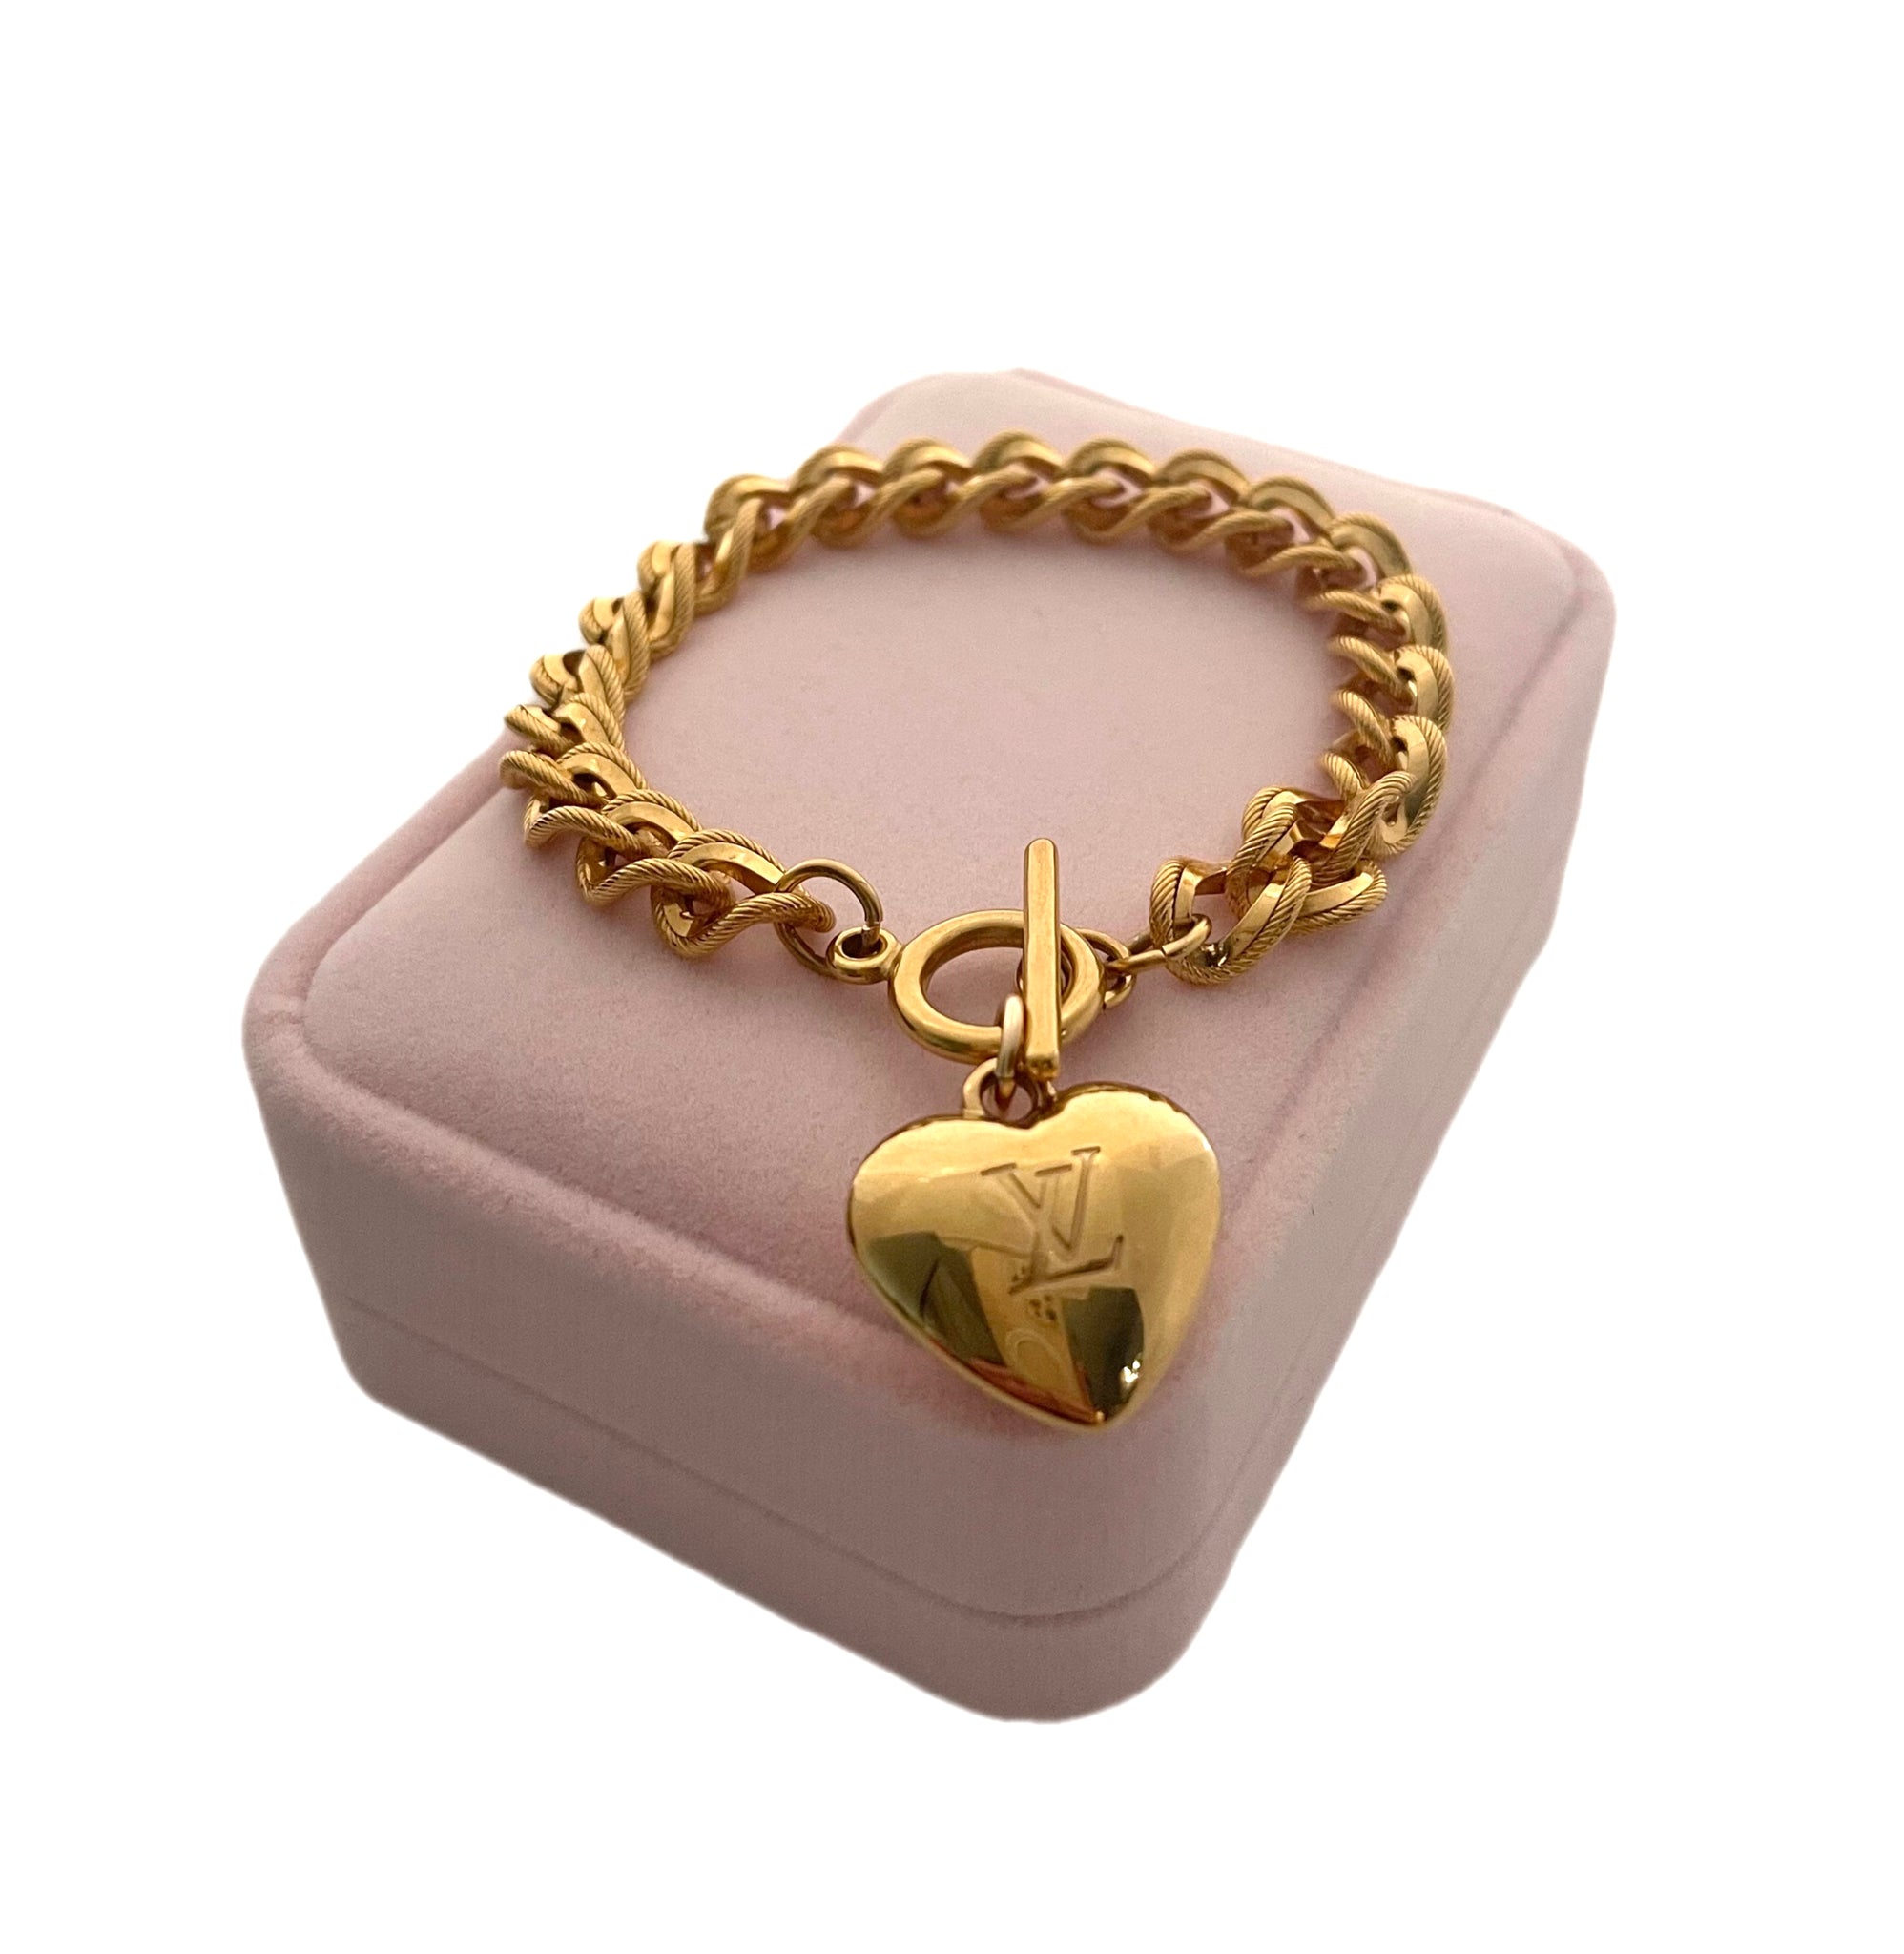 Buy Golden Heart Charm Bracelet